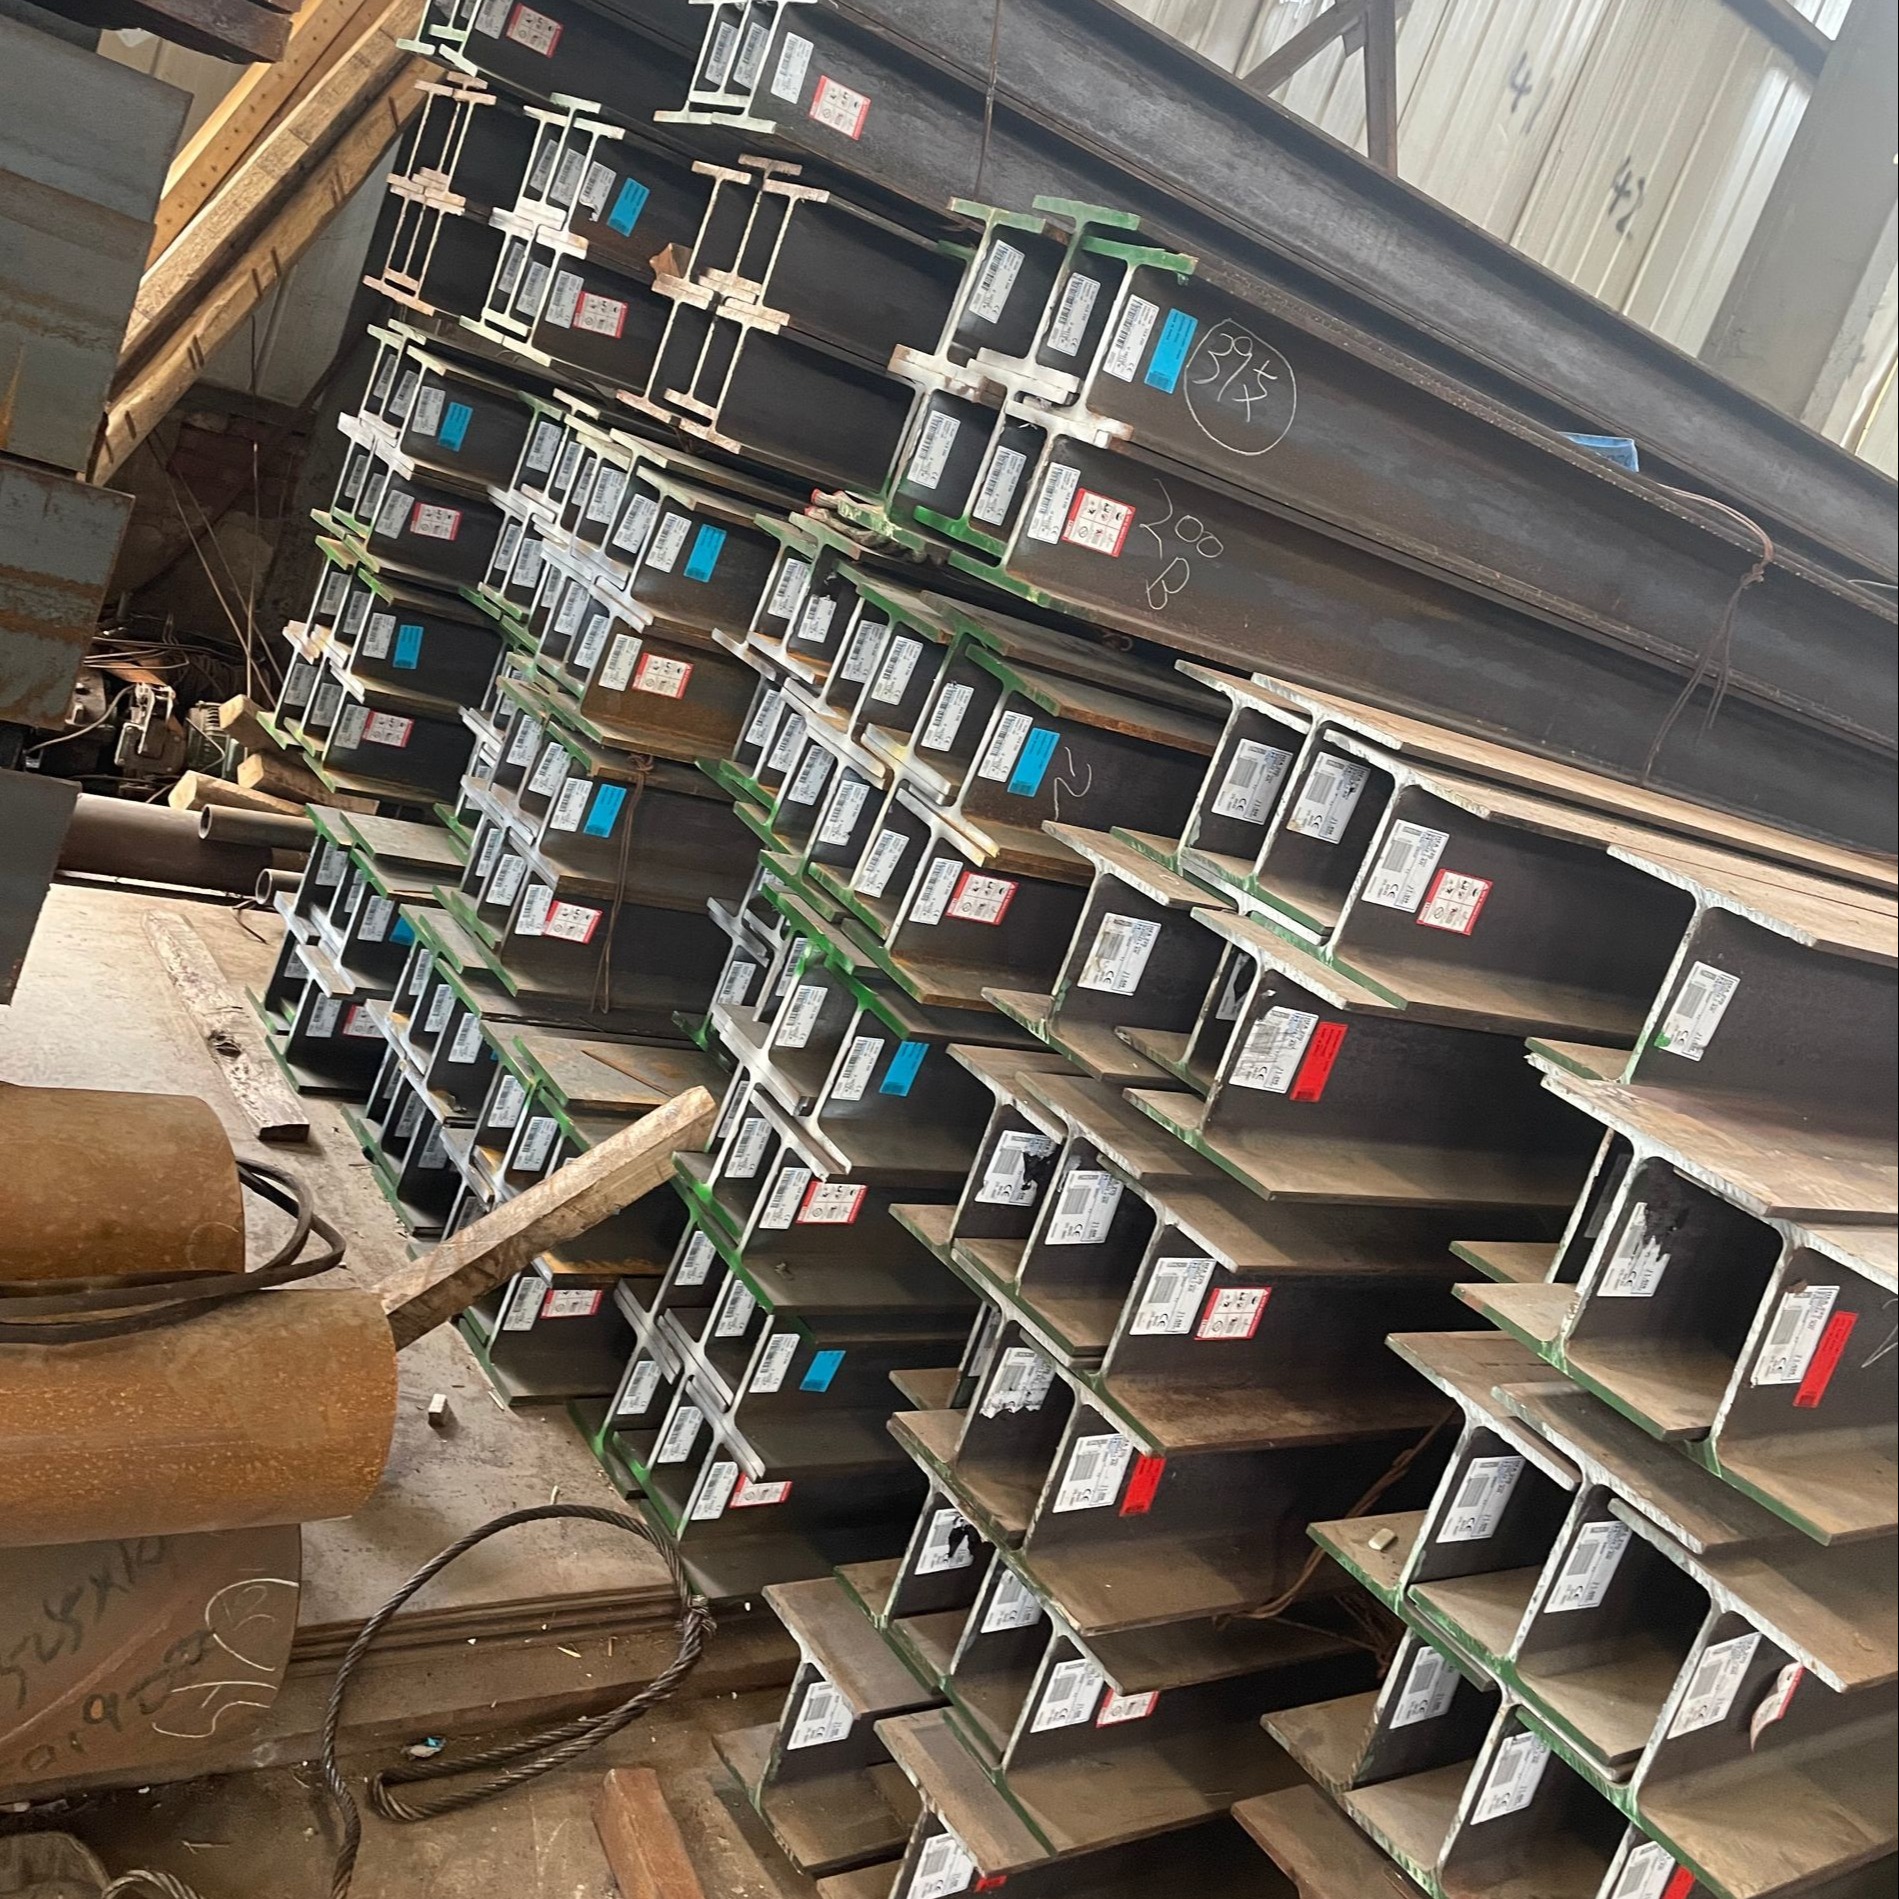 150UC澳标H型钢   澳标H型钢澳门钢结构项目使用  低价出售澳标钢材图片